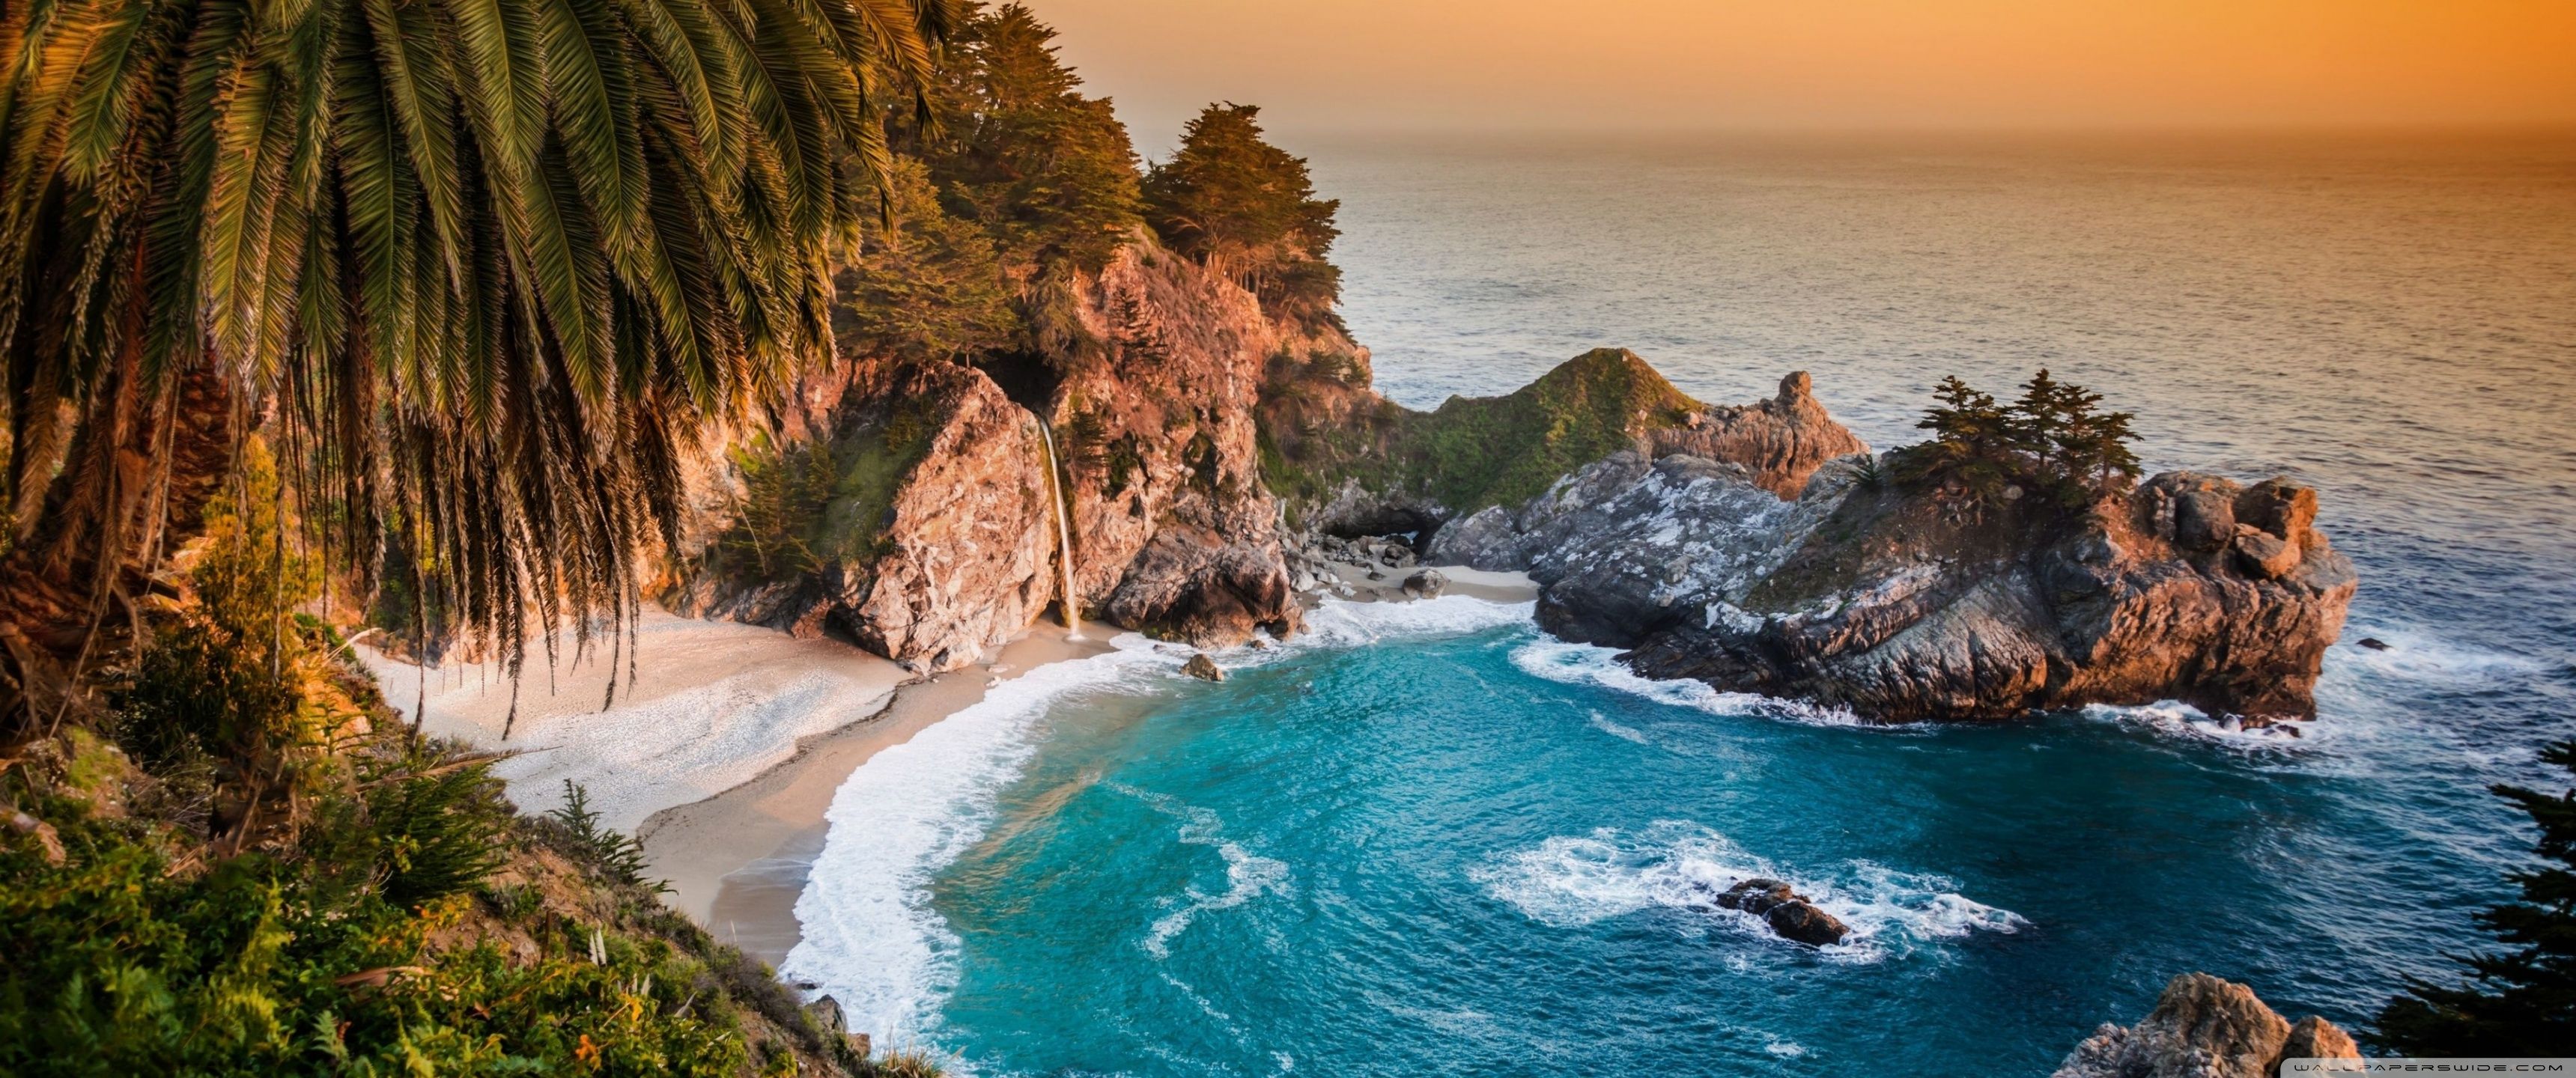 Download Pacific Ocean, Big Sur, California, Beach UltraHD